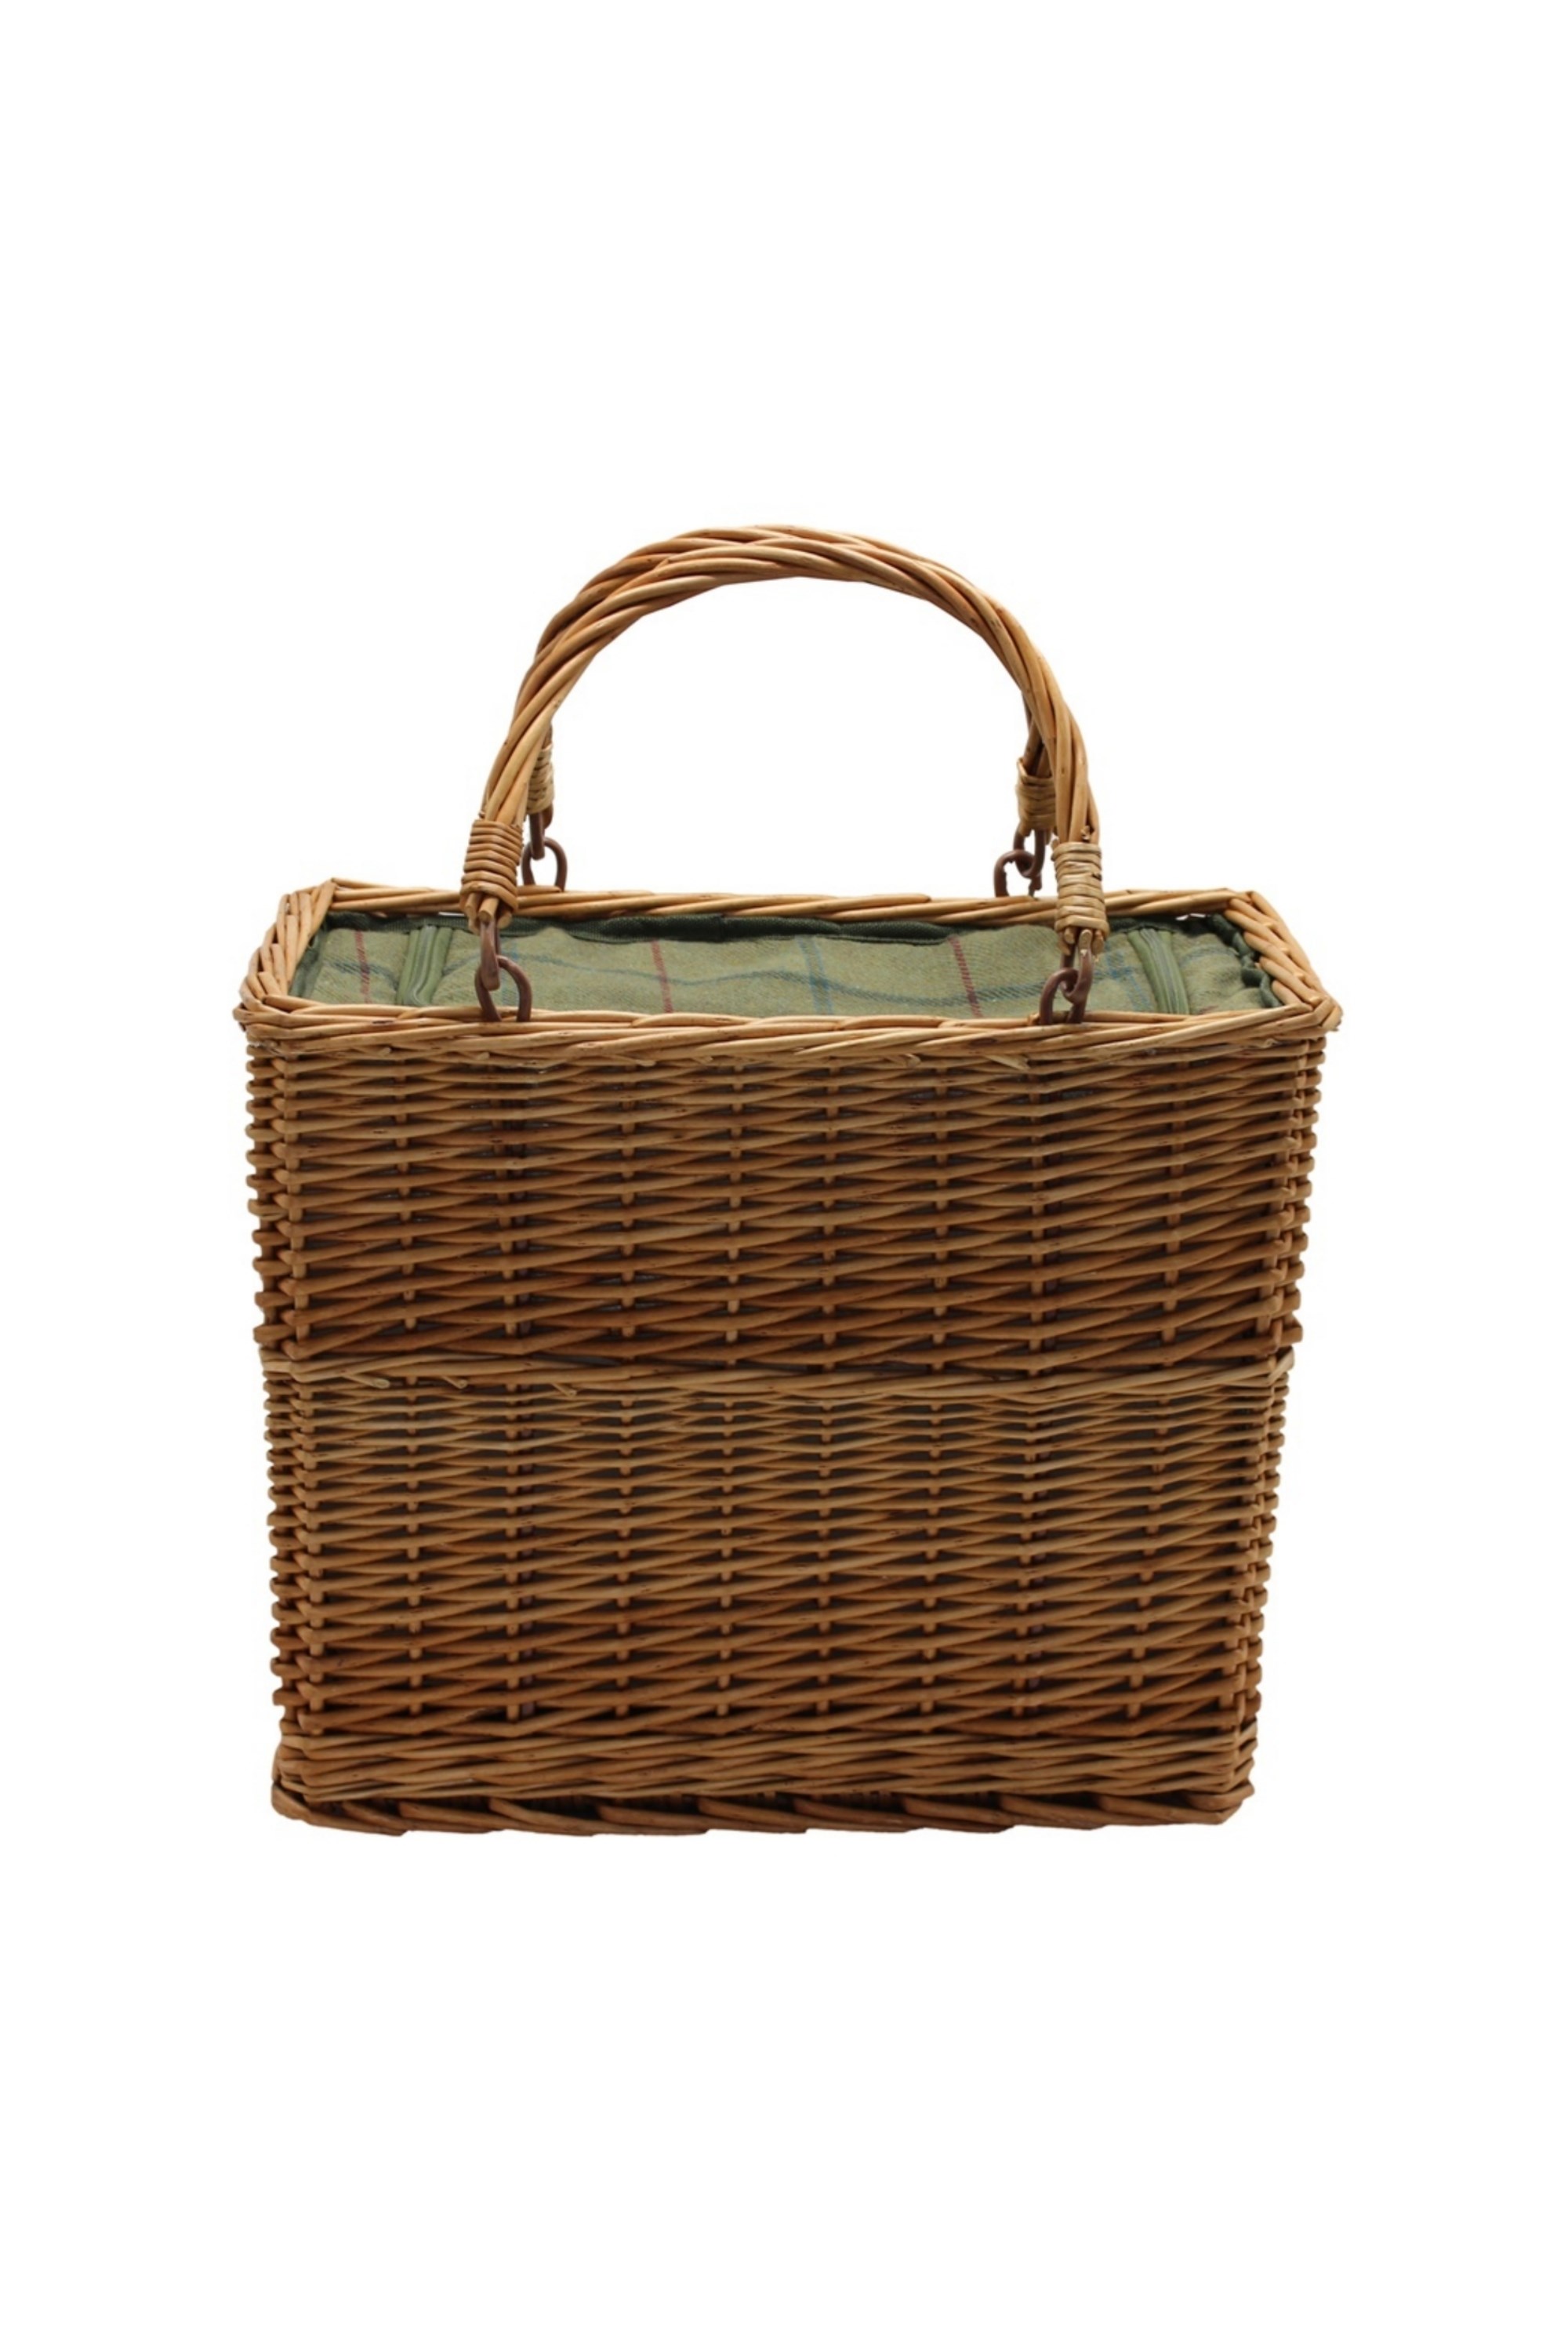 Green Tweed Rectangular Cooler Basket -